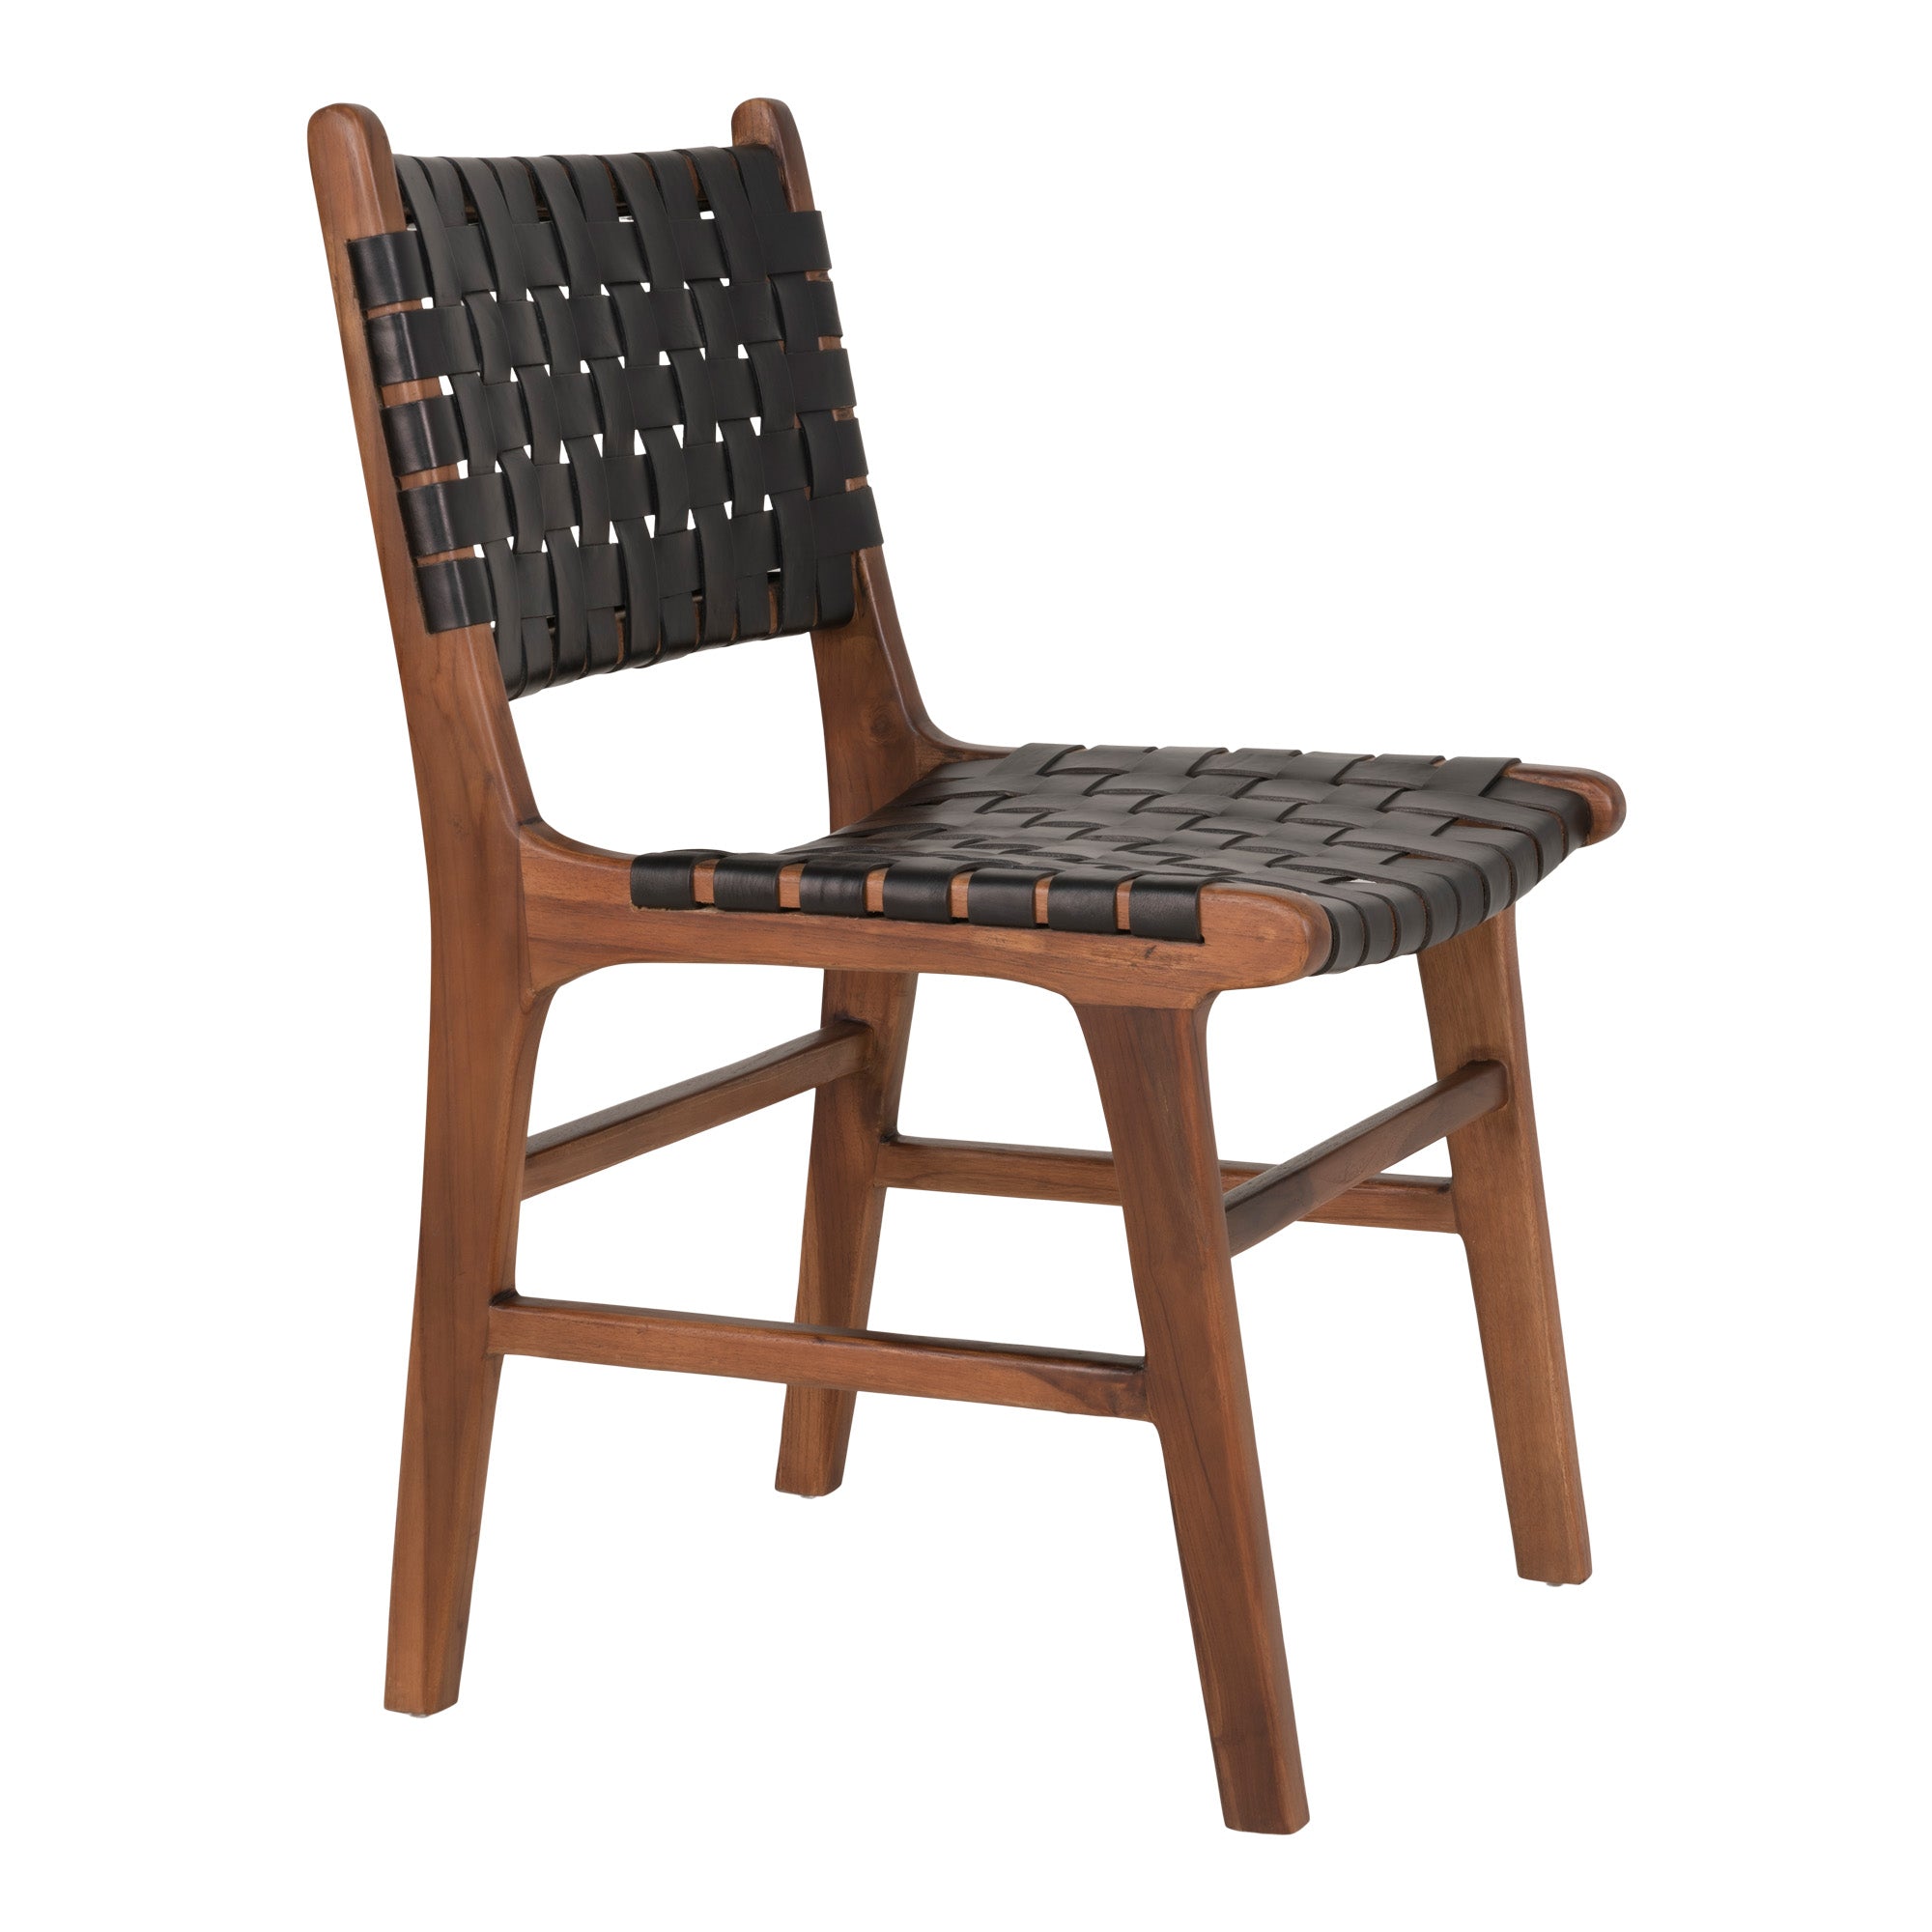 Perugia Spisebordsstol - Spisebordsstol I Læder, Sort Med Teak Ben ⎮ Sæt af 2 stk. ⎮ 5713917010561 ⎮ 1001452 